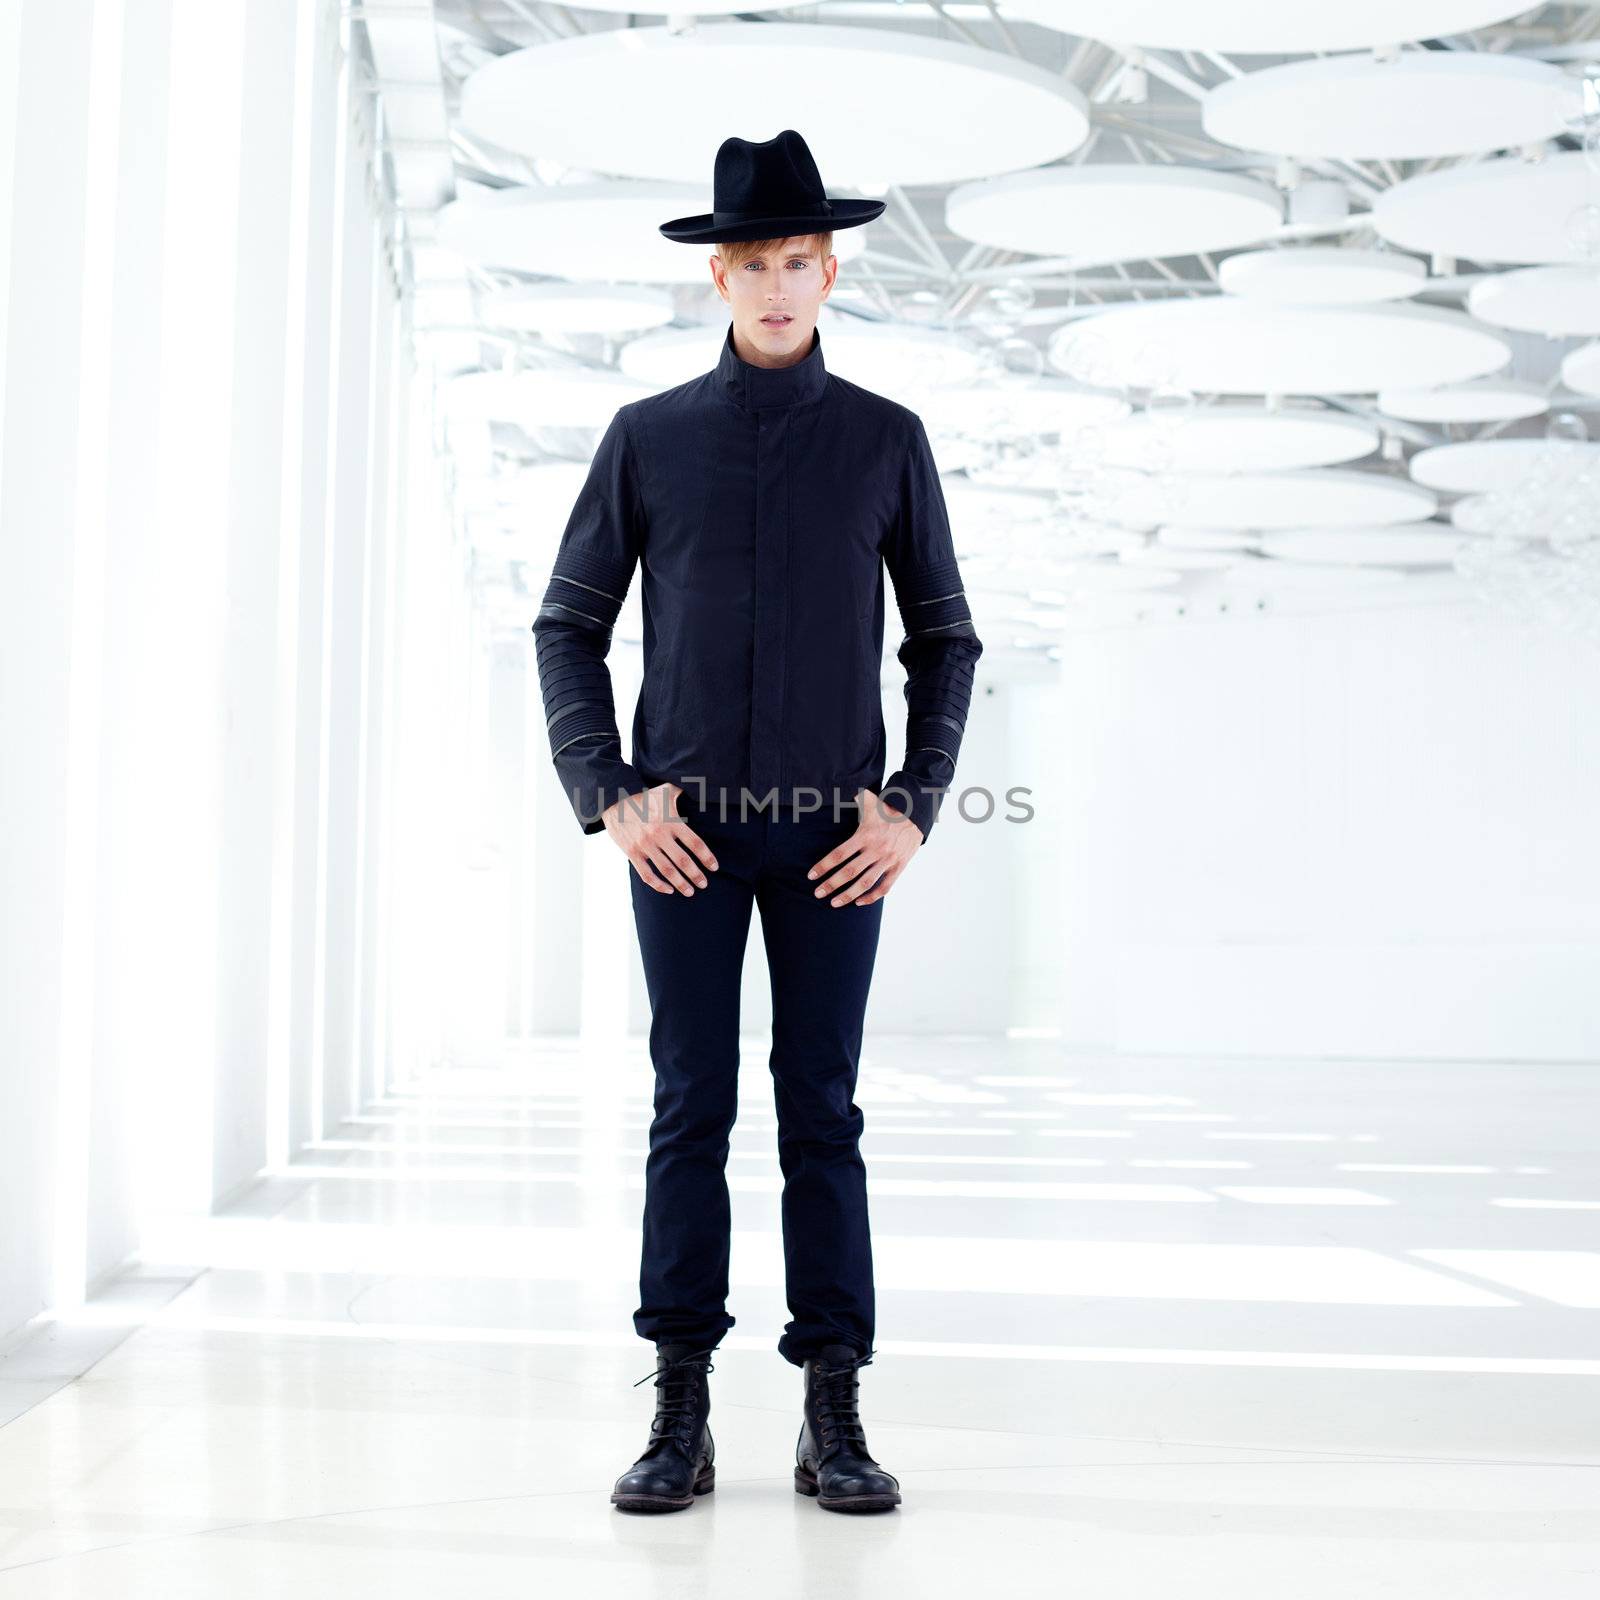 black far west modern fashion man with hat by lunamarina